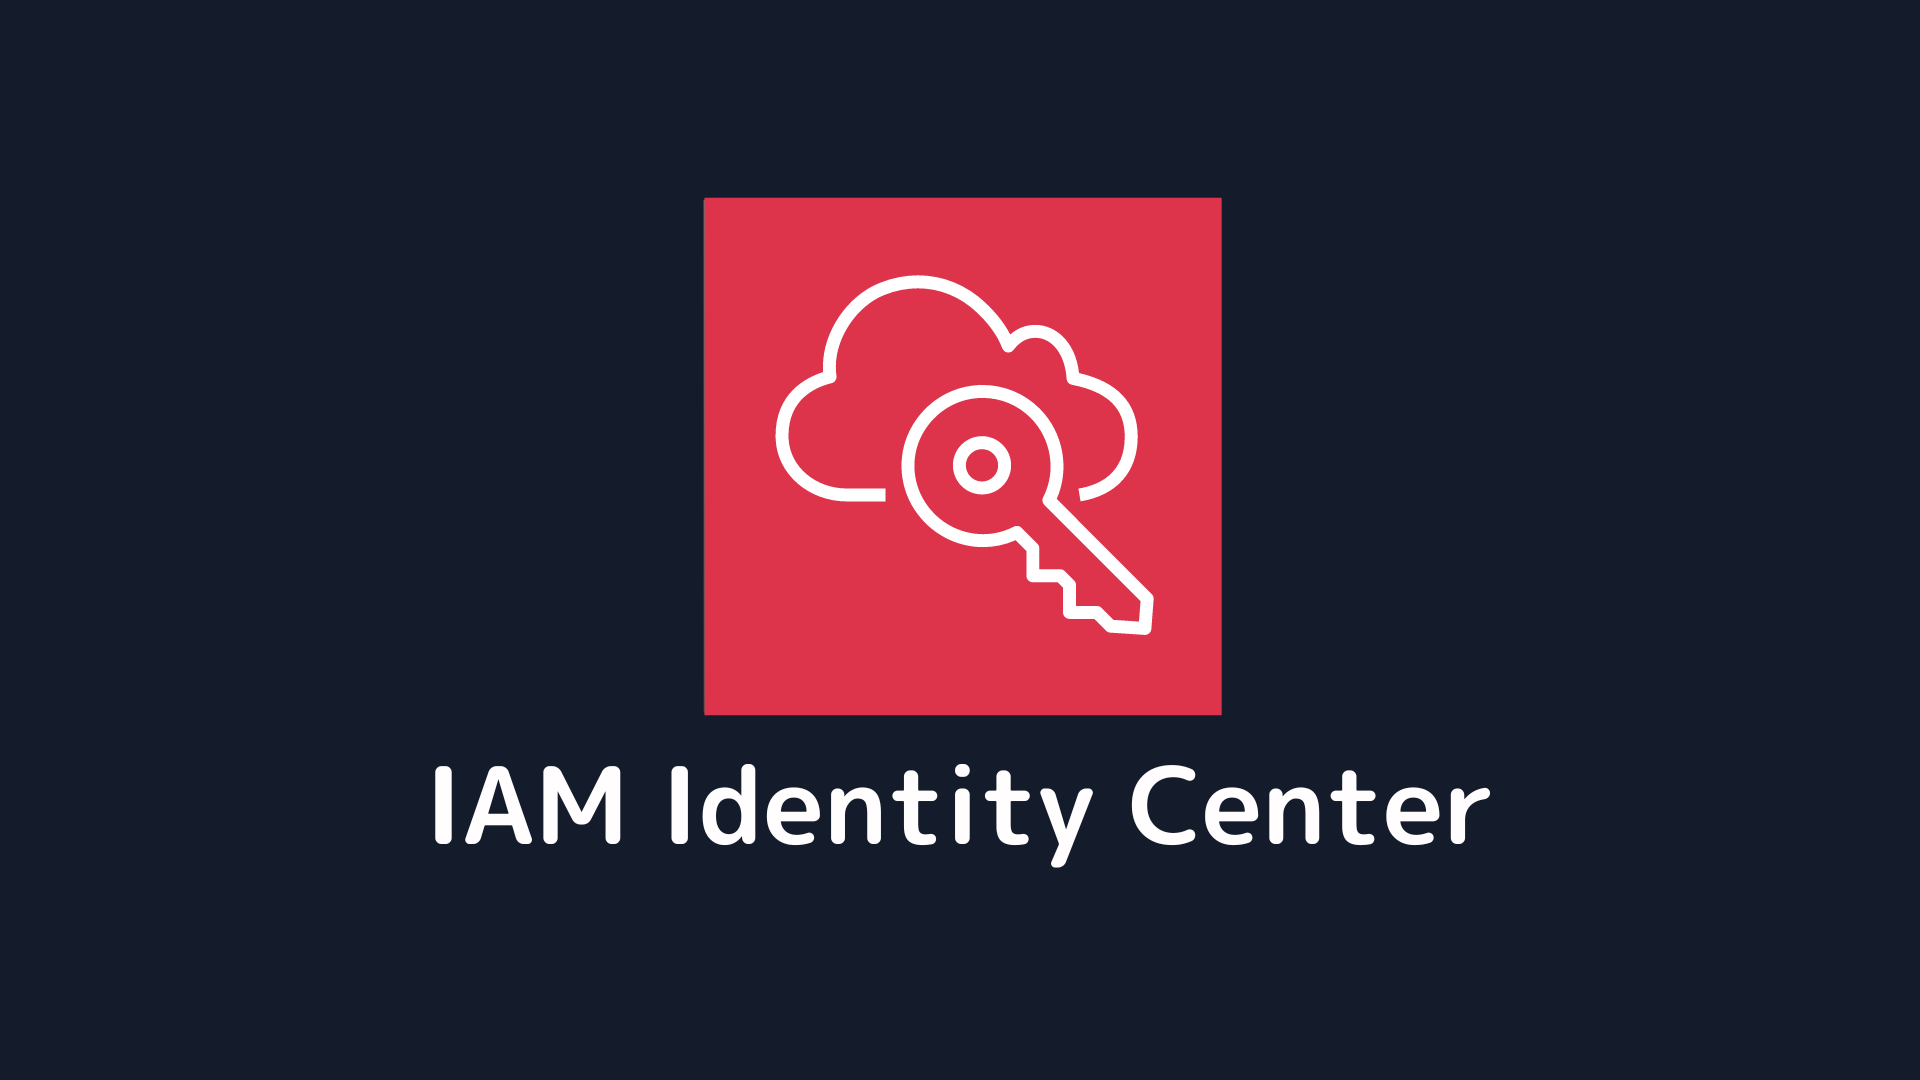 AWSアカウントにサインインするときはIAM Identity Center経由にしま 